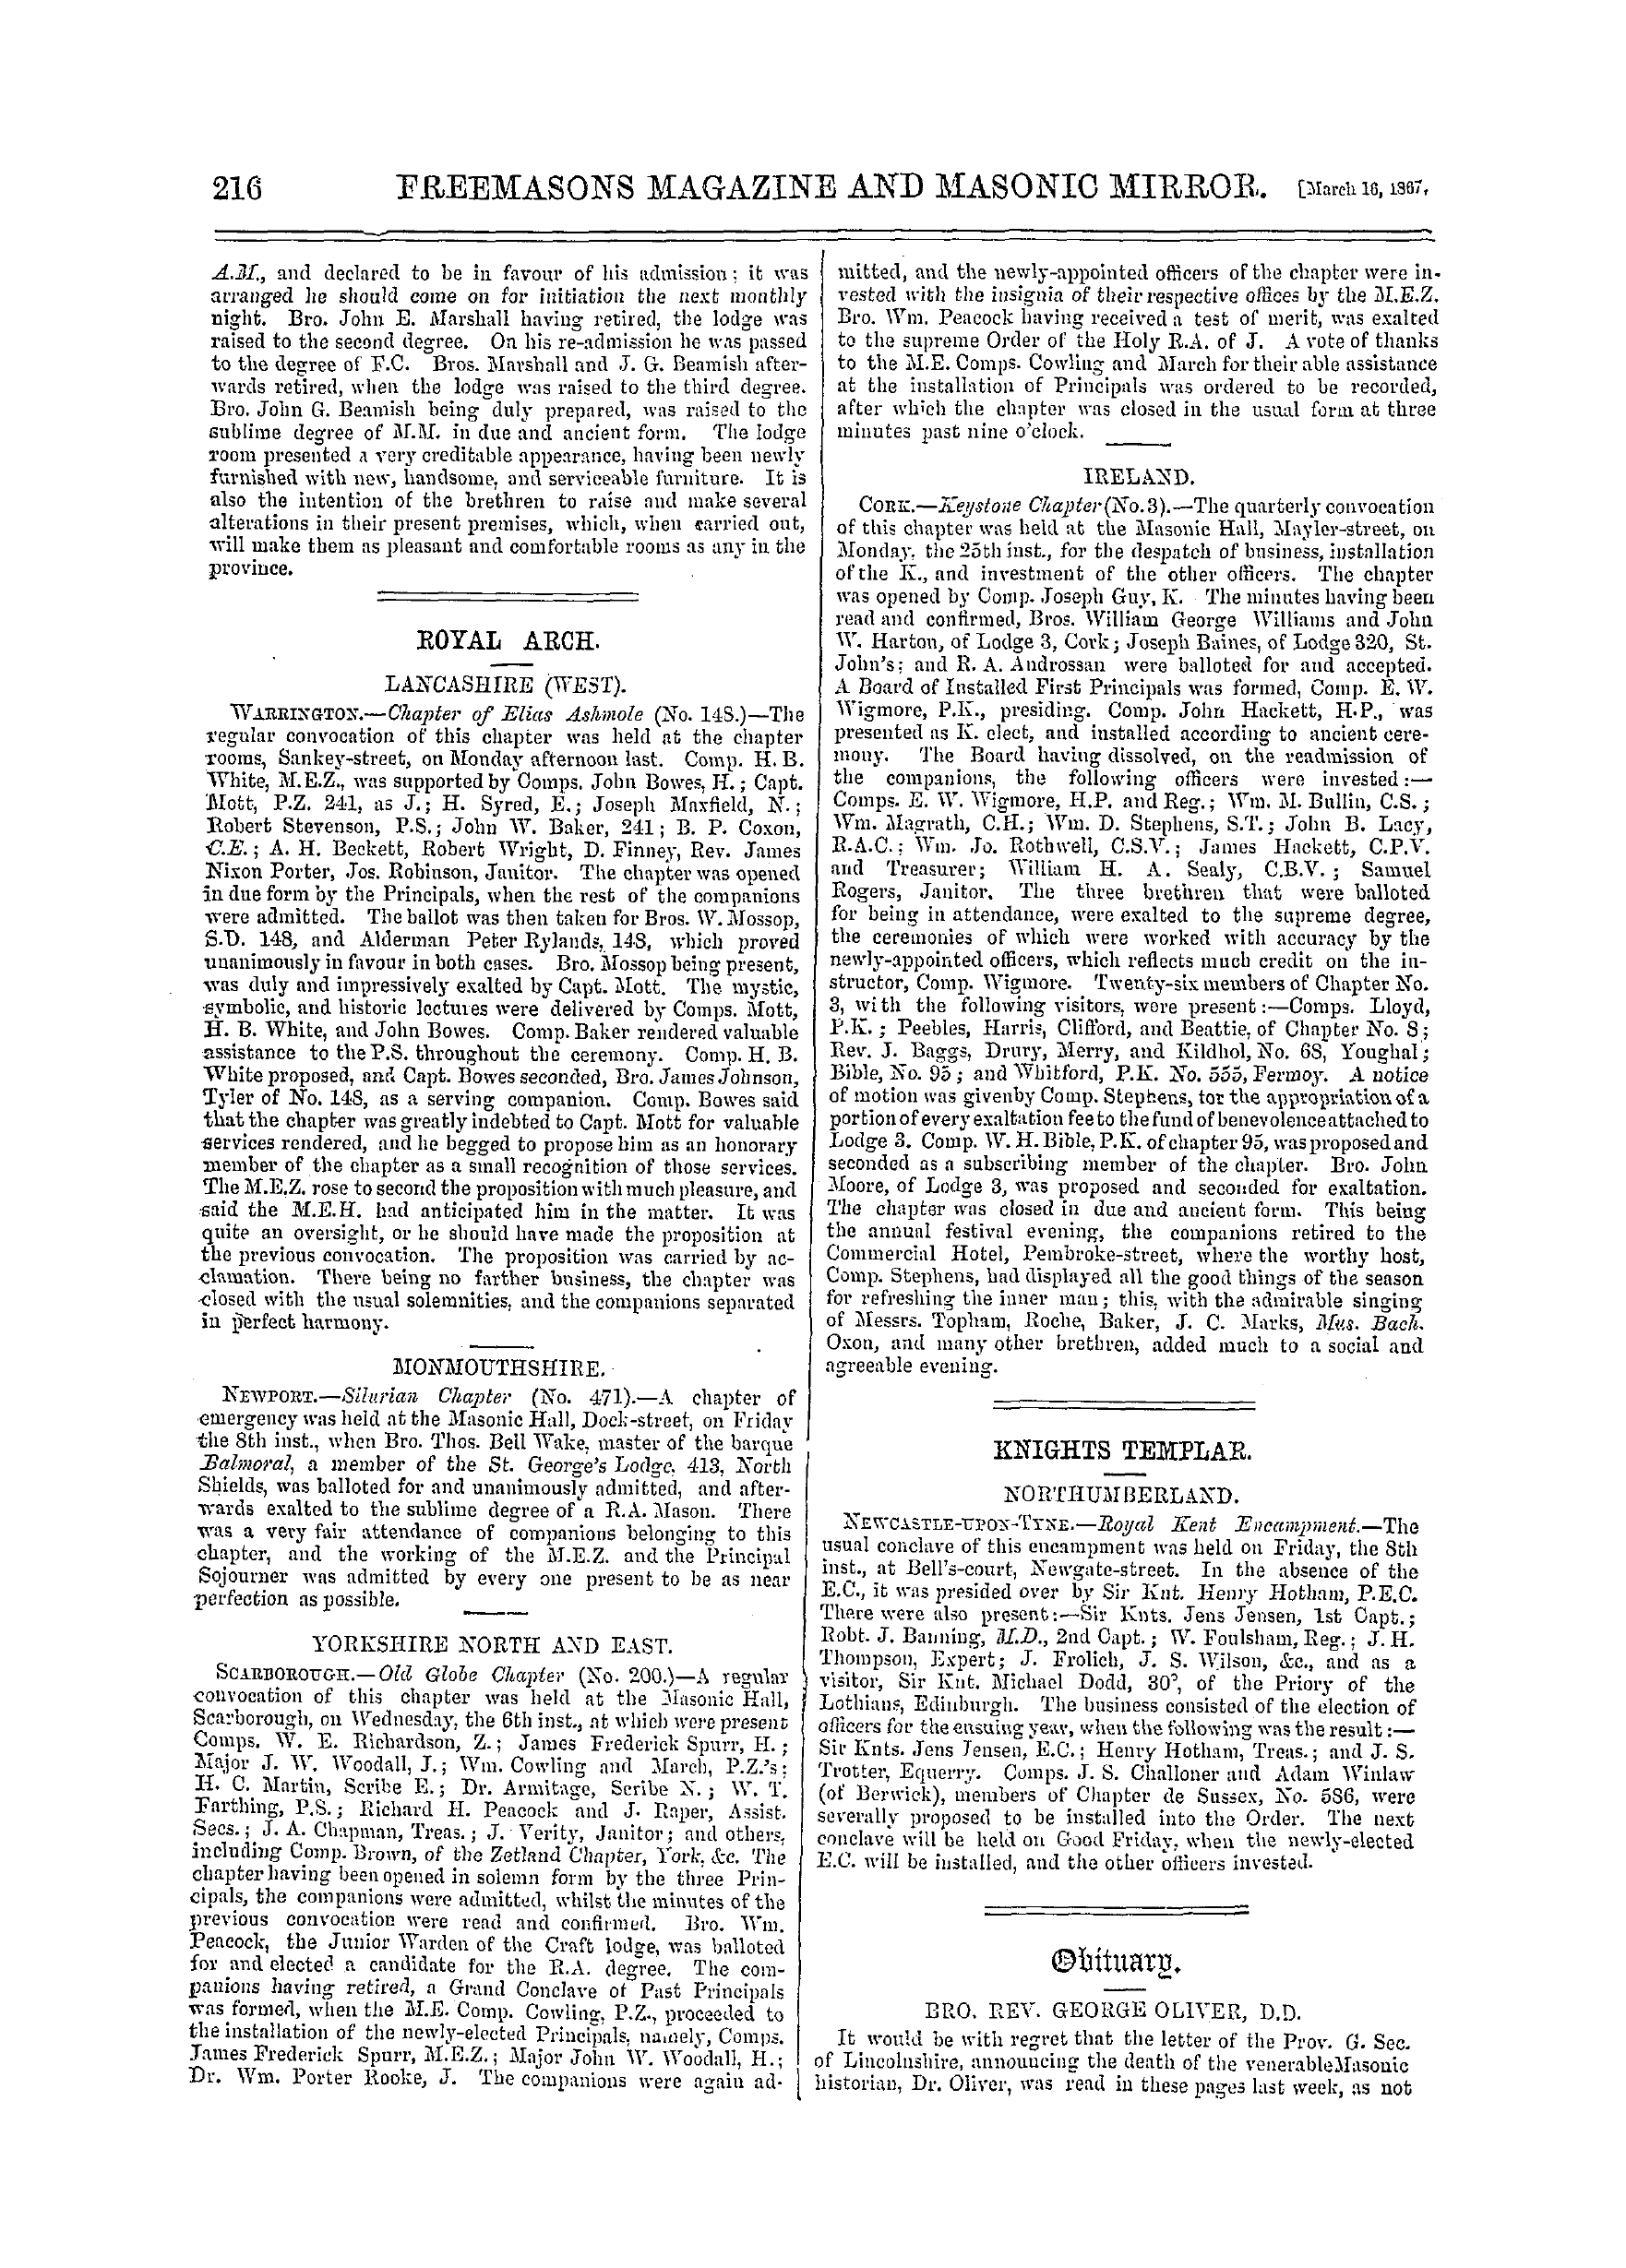 The Freemasons' Monthly Magazine: 1867-03-16 - Obituary.